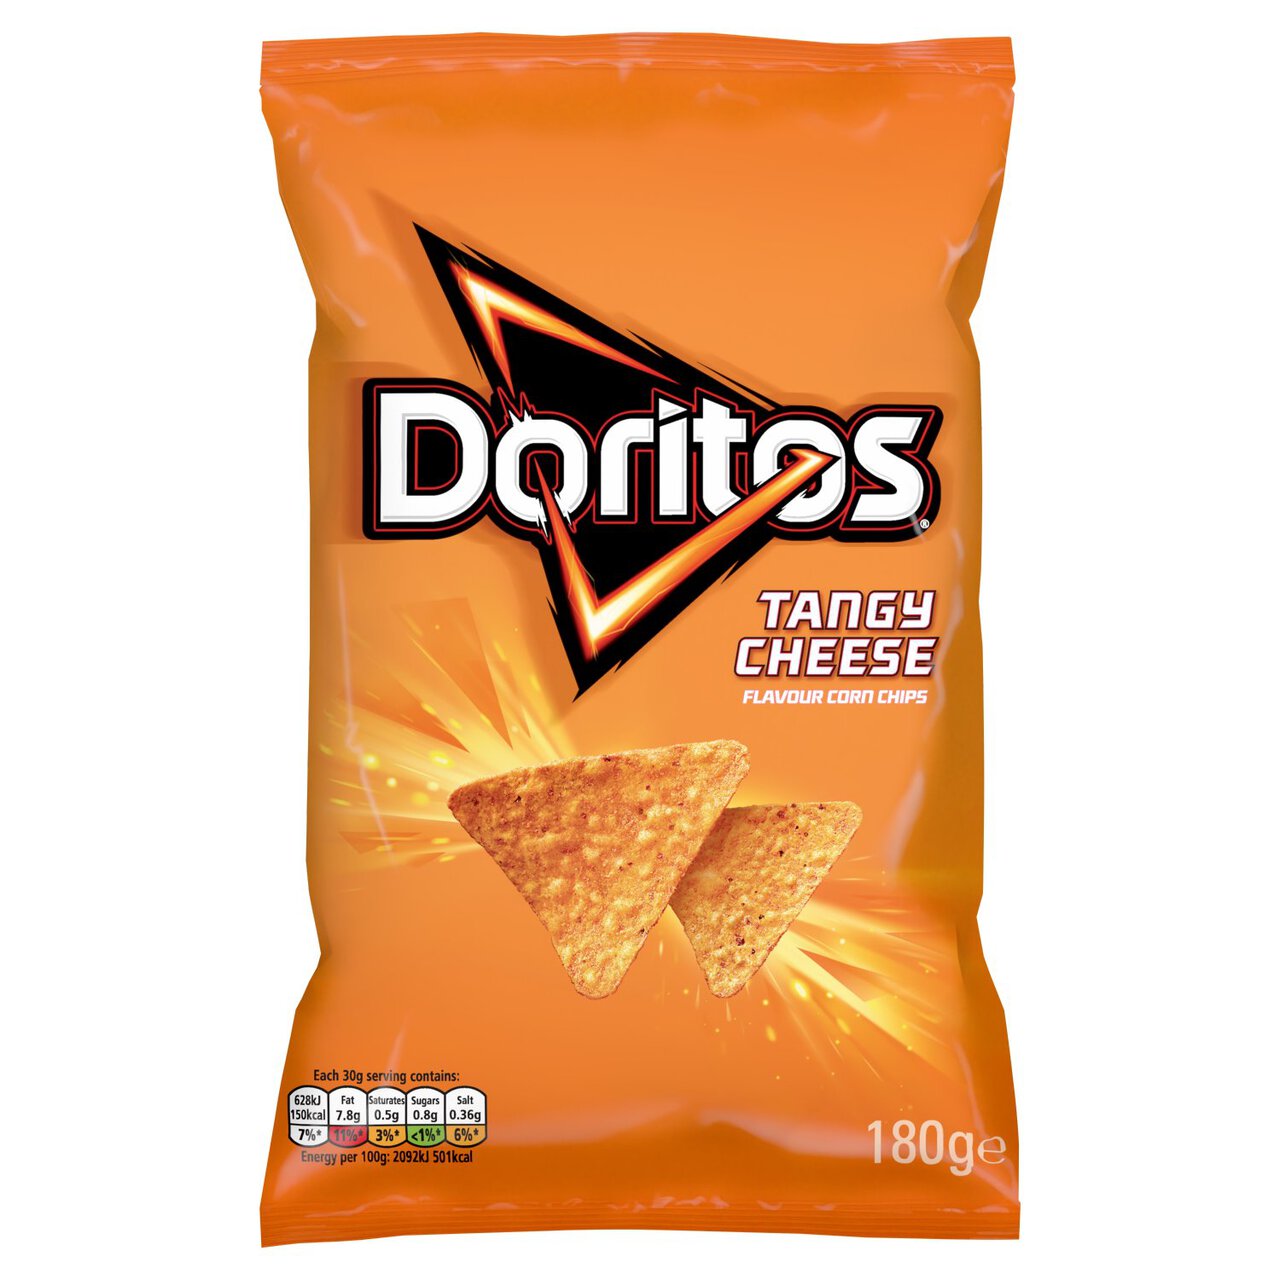 Doritos Tangy Cheese Tortilla Sharing Chips 180g